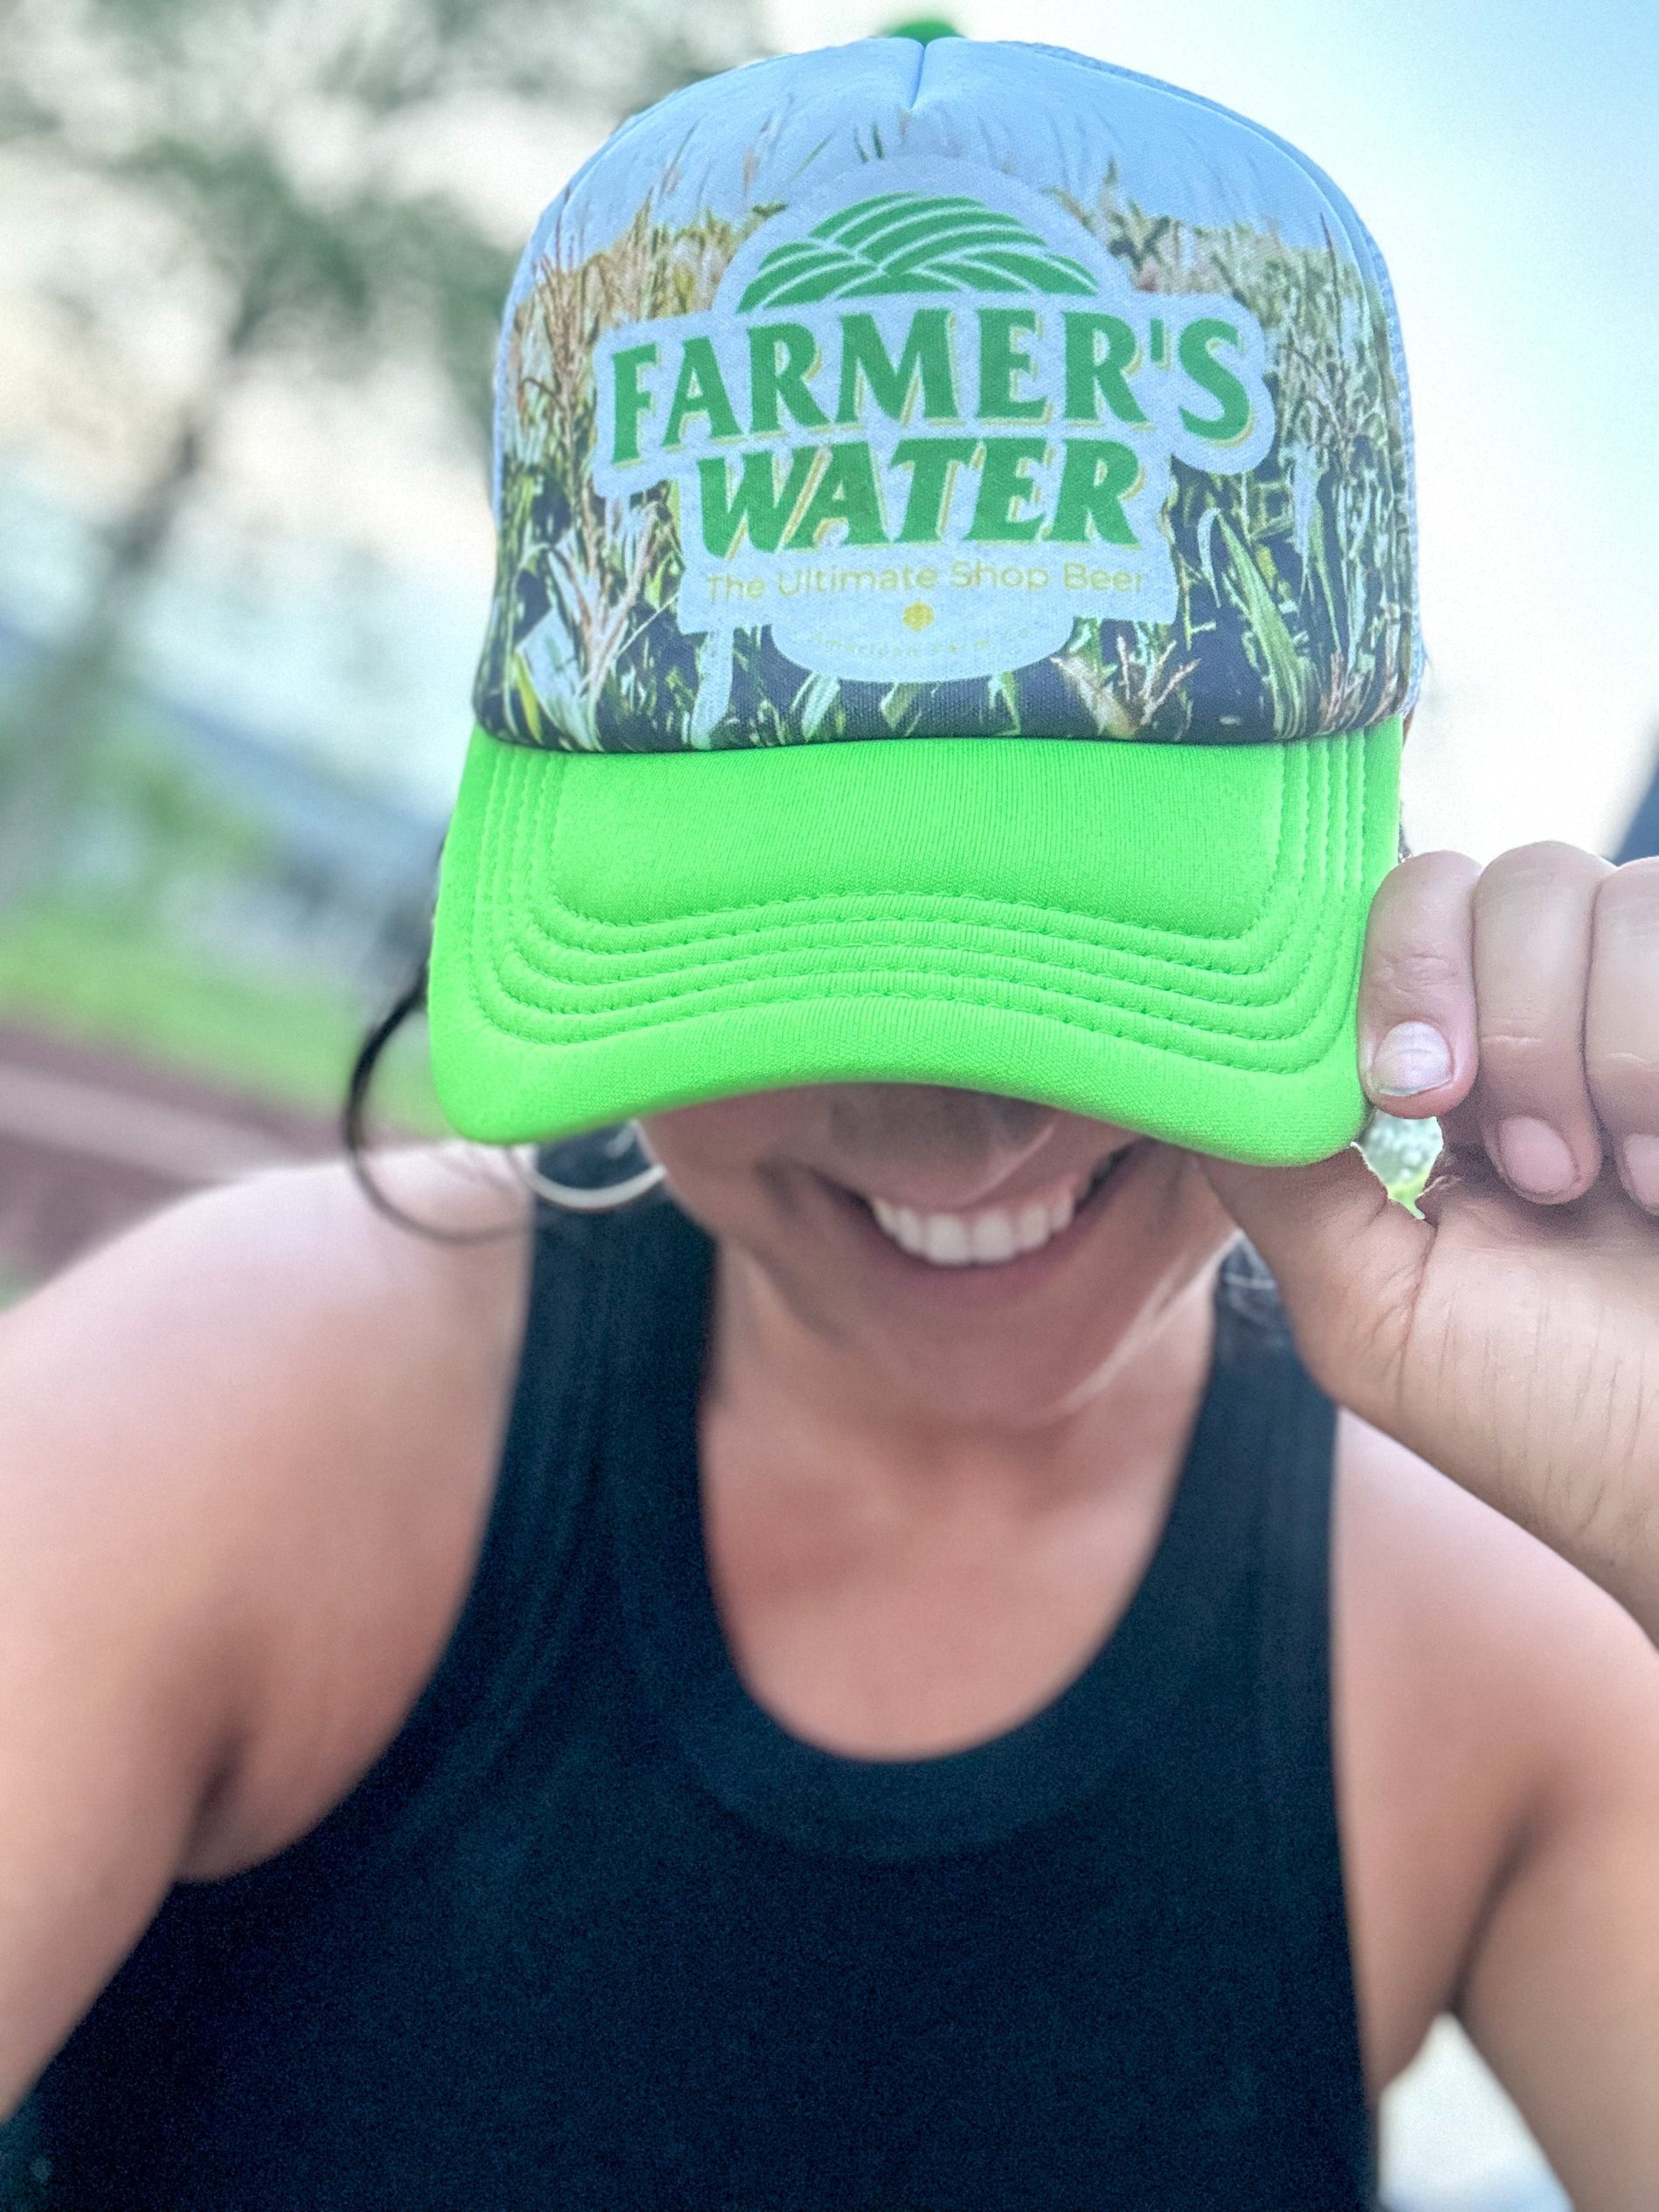 New 'Farmer's Water' Retro Foam Caps